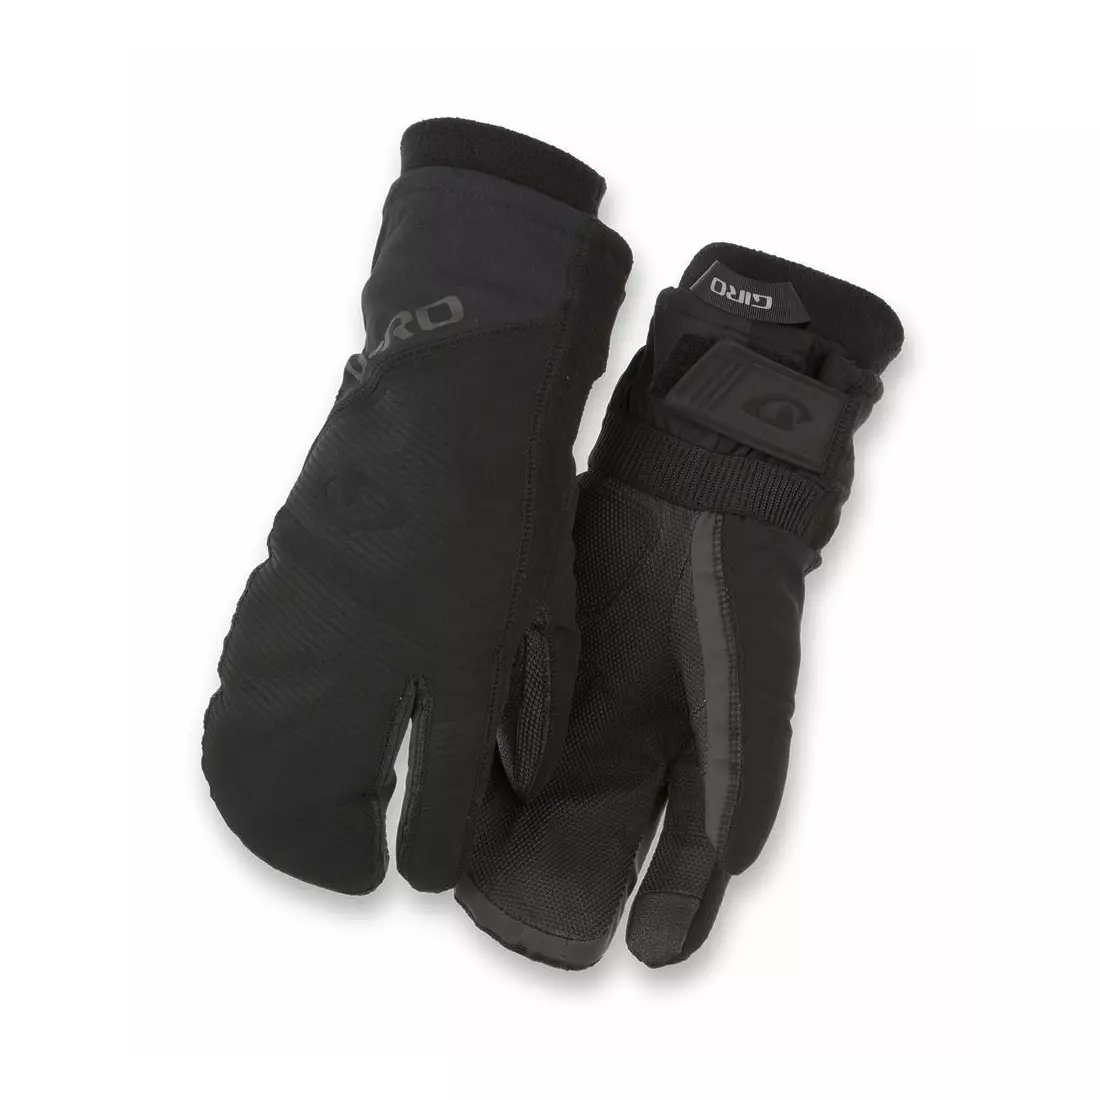 GIRO zimní cyklistické rukavice 100 PROOF black GR-7097440